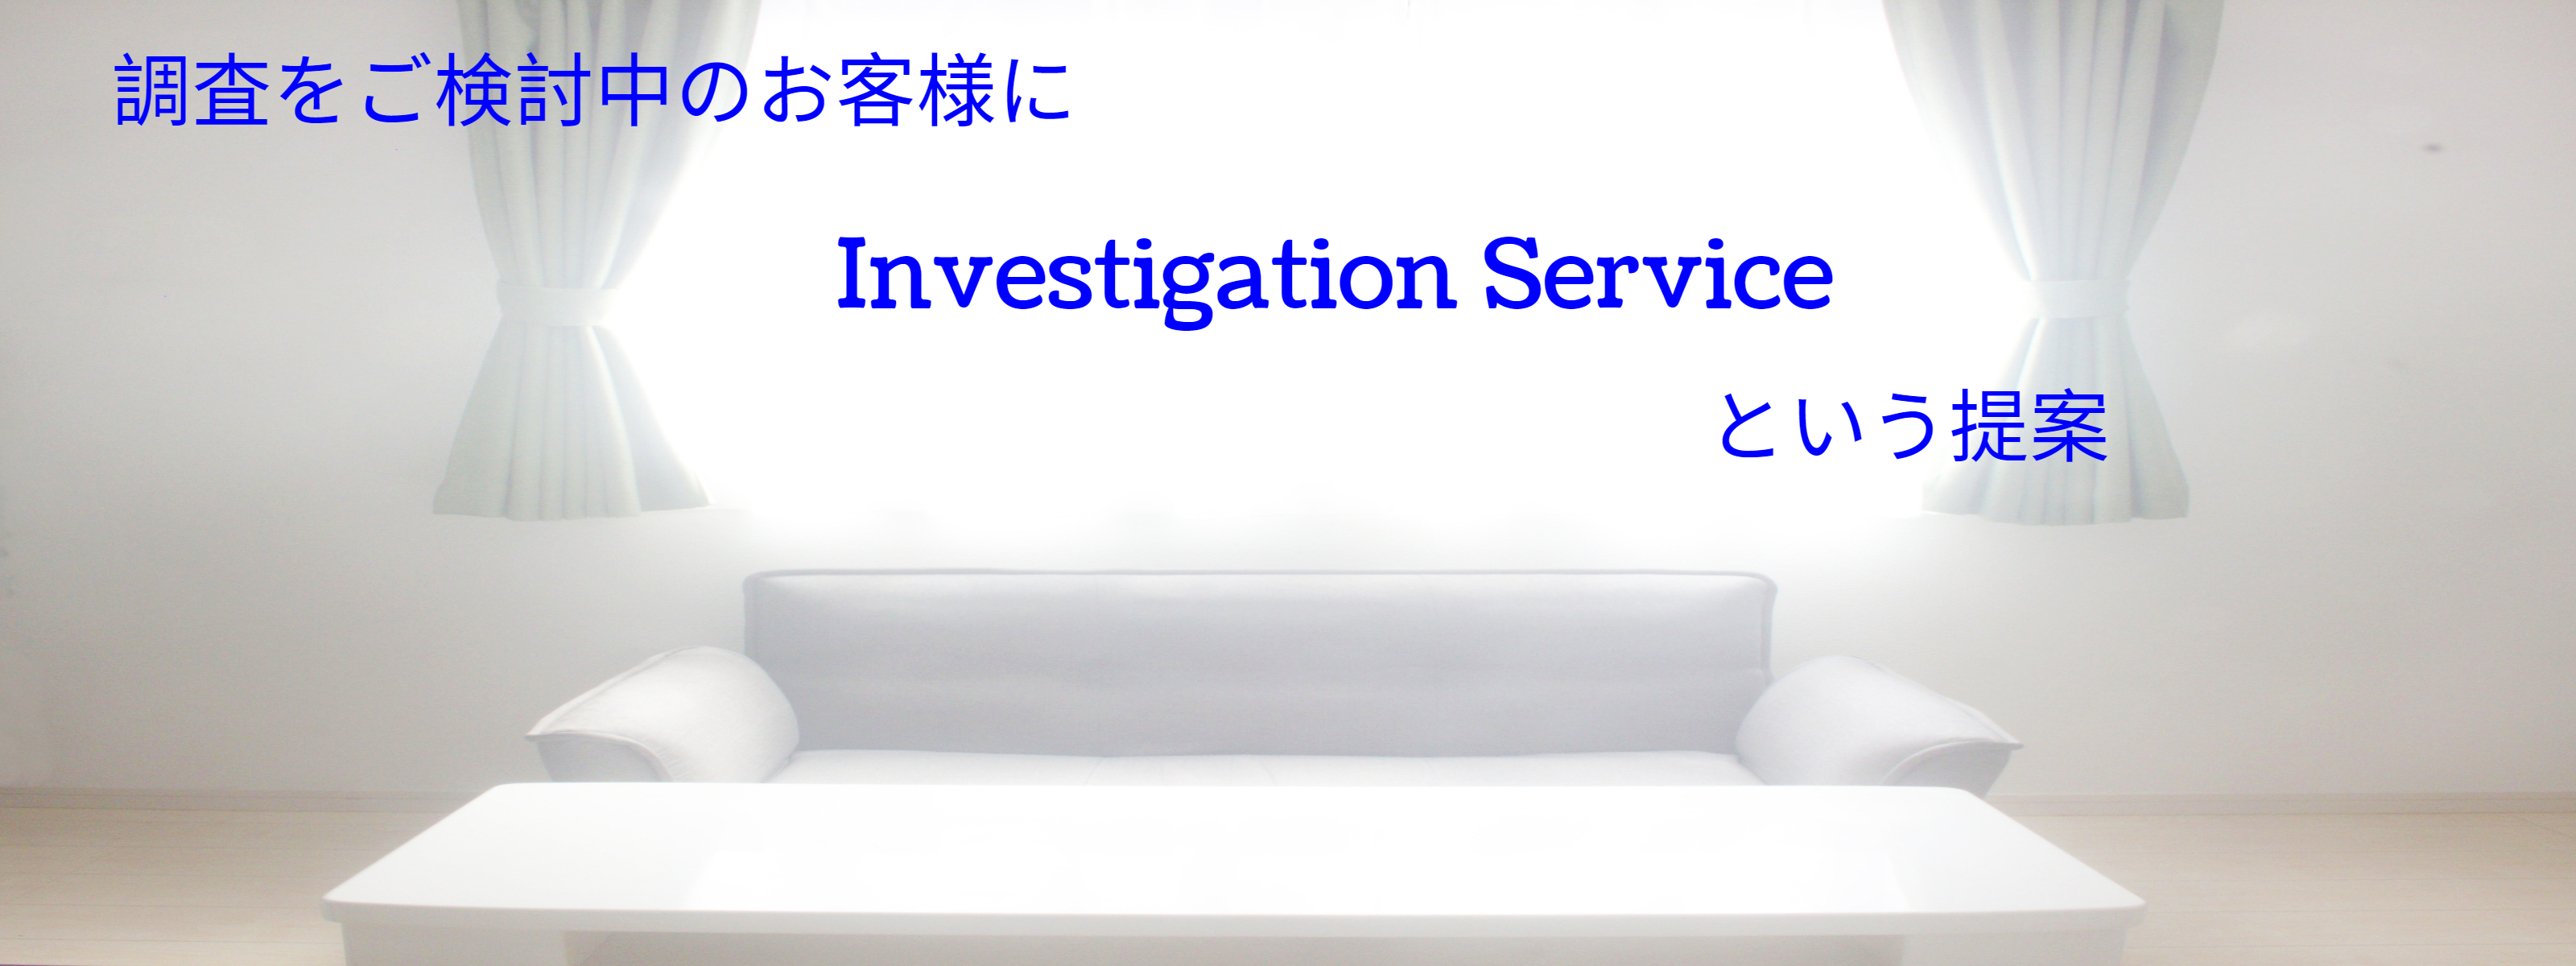 Investigate Service